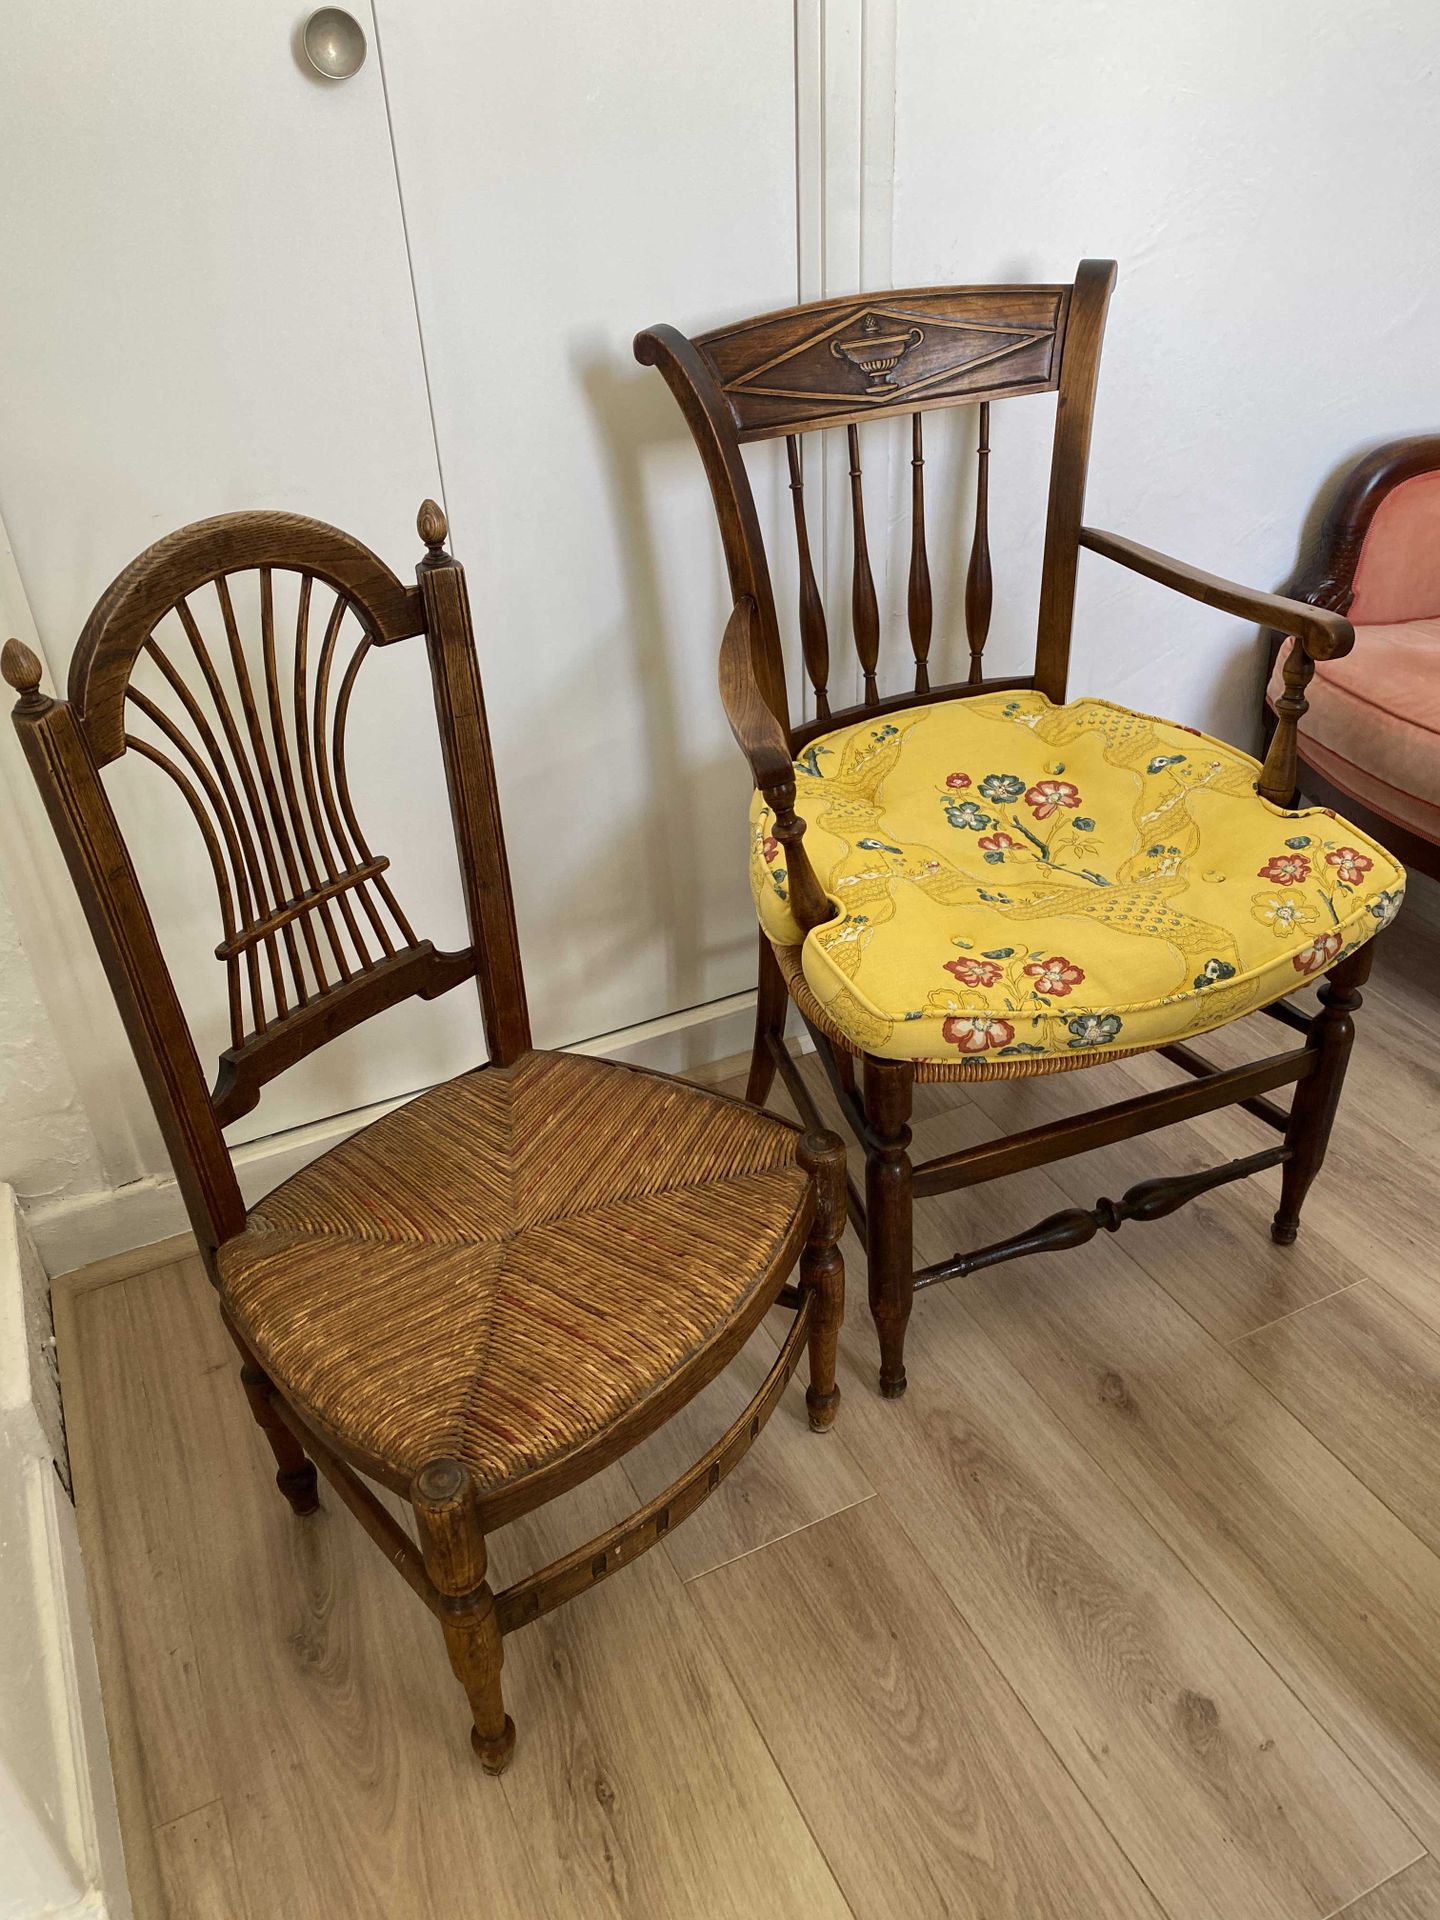 Null Set bestehend aus einem Sessel und einem Stuhl aus Stroh.

19. Jahrhundert